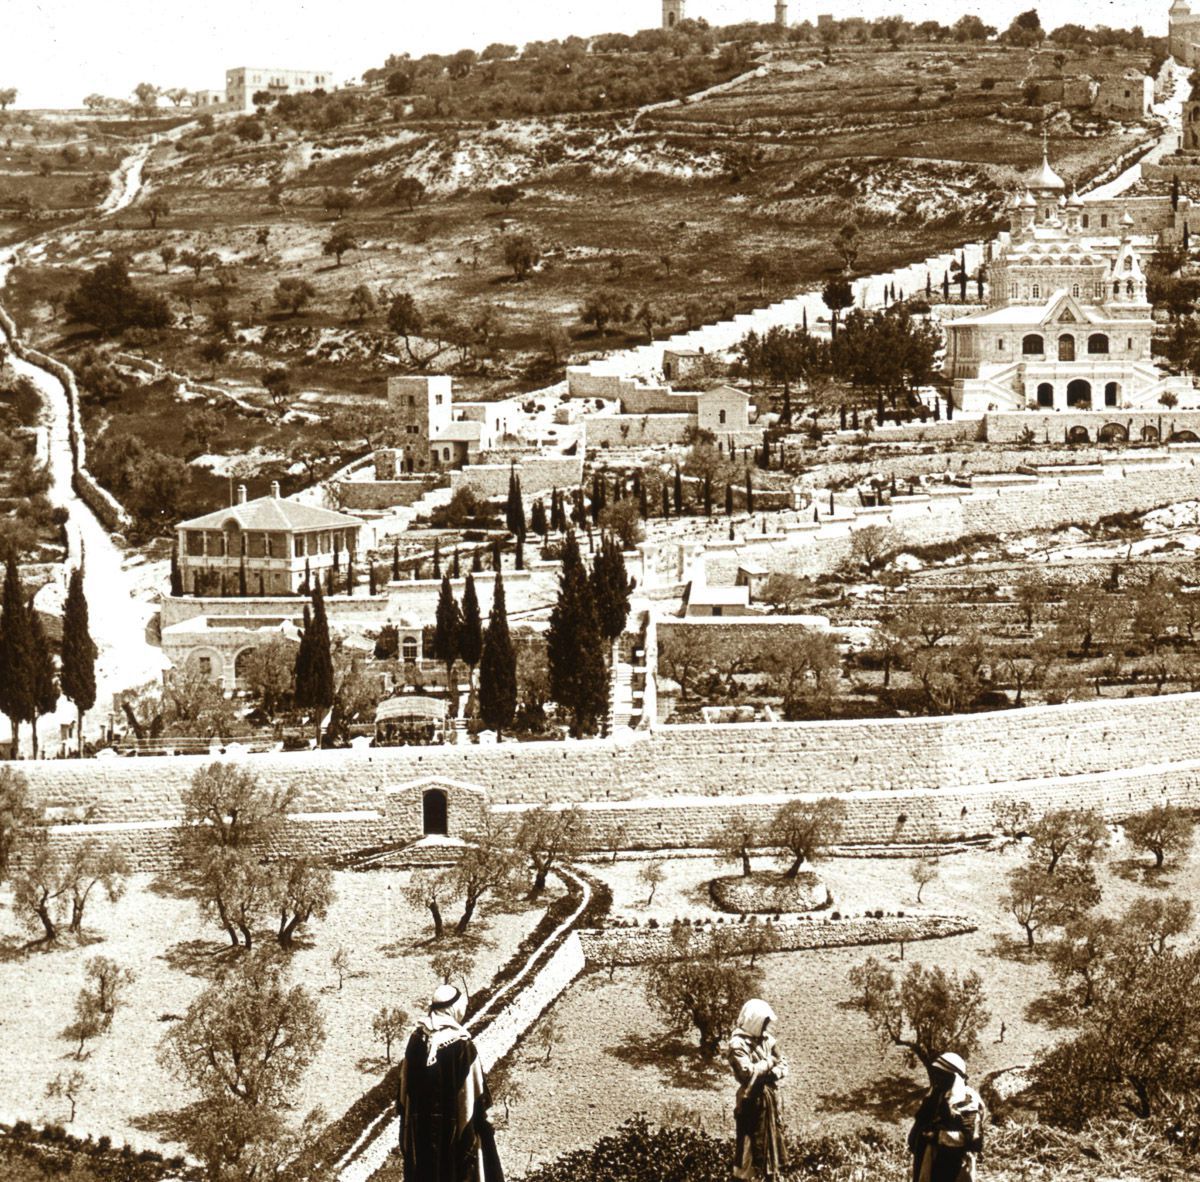 The Garden of Gethsemane and Mount of Olives, Jerusalem.